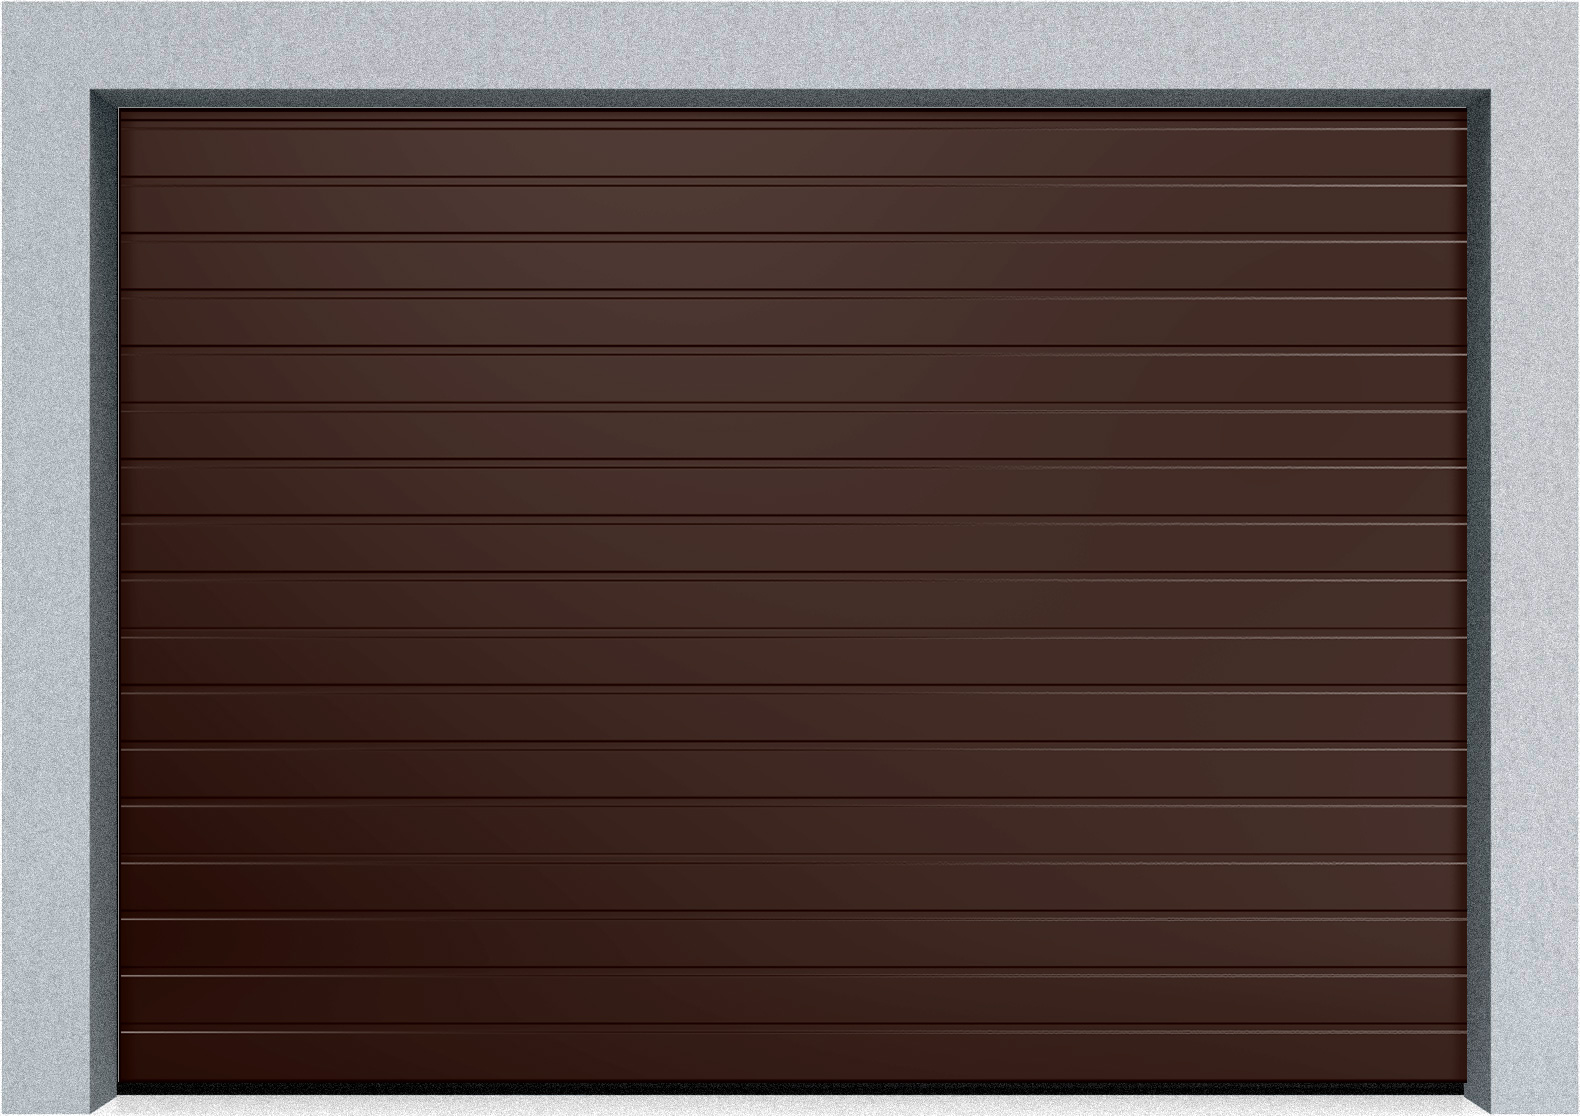  Автоматические секционные гаражные ворота DoorHan RSD02 3000х3300 S-гофр, M-гофр, Микроволна стандартные цвета, фото 3 